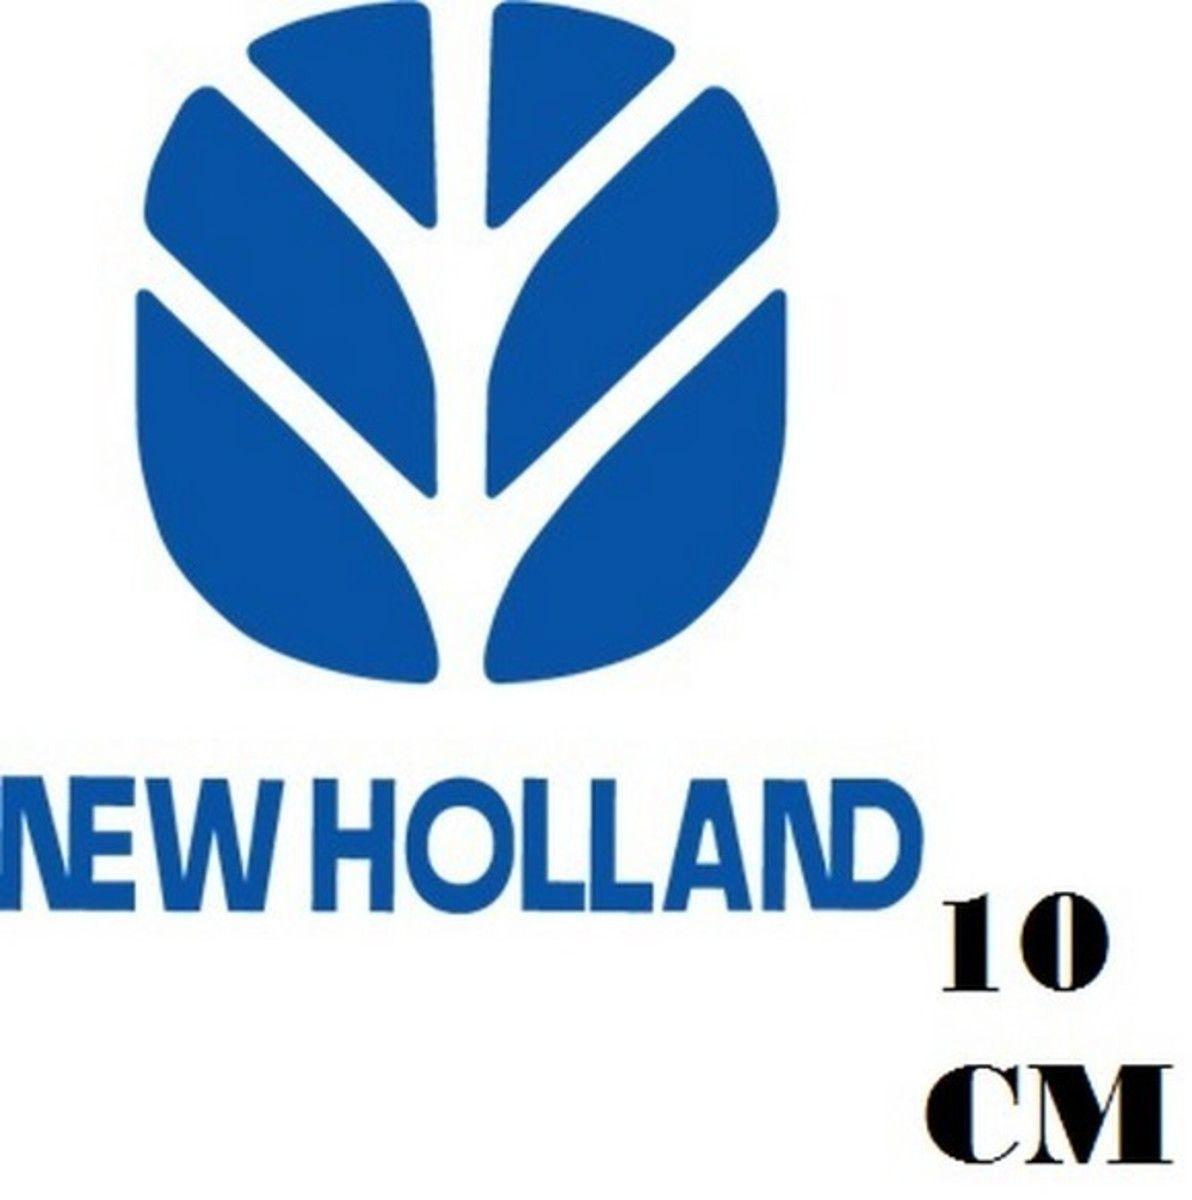 New Holland Logo - Adesivo Logo New Holland Frete Grátis no Elo7 | STICKER KING (CE96C2)